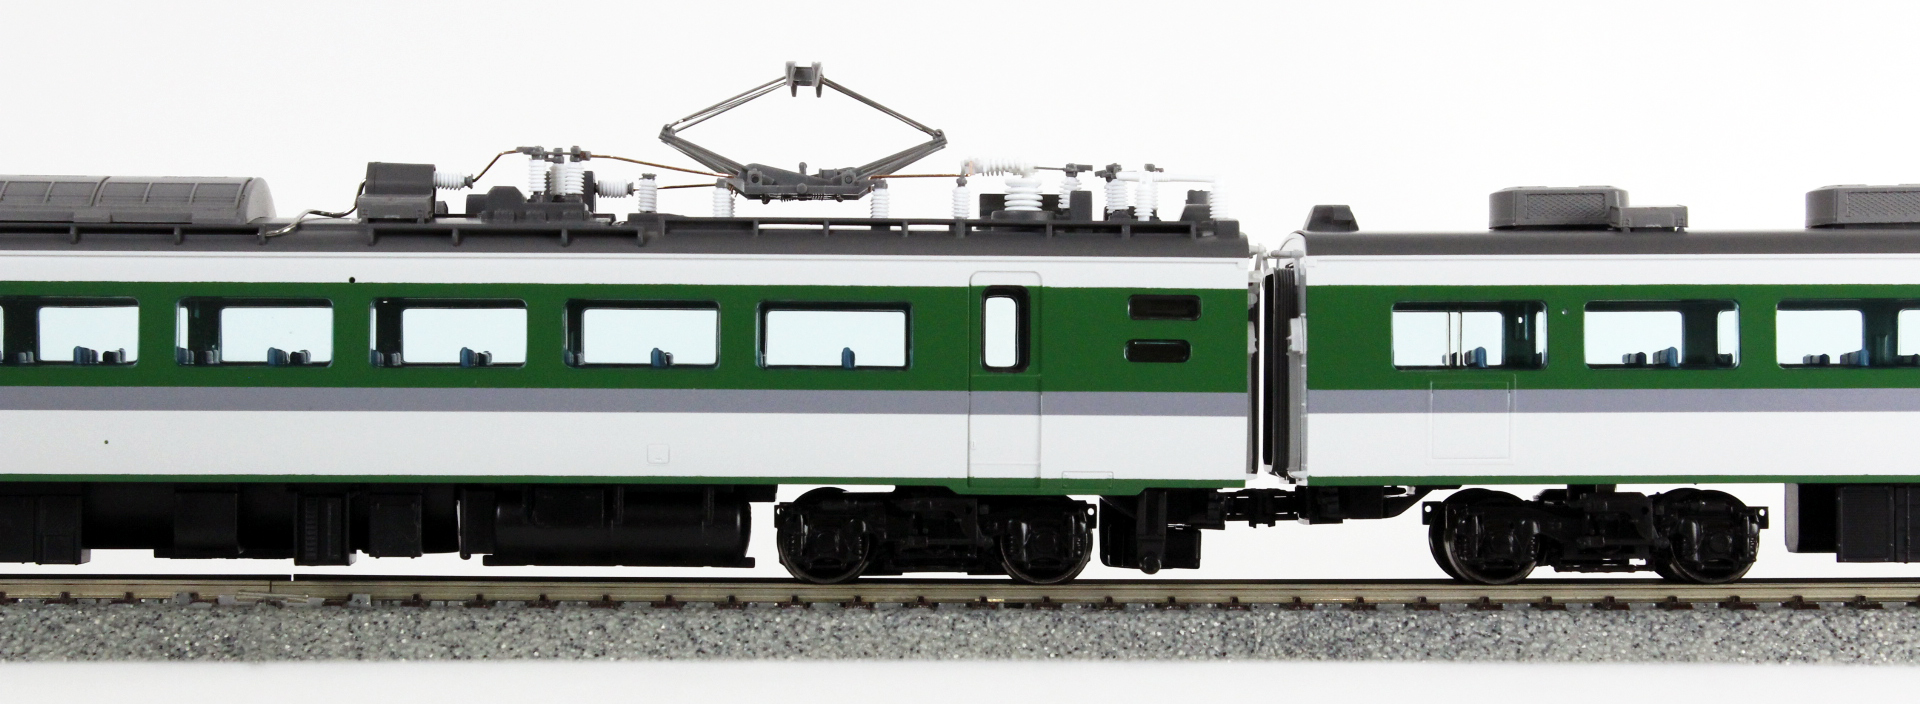 トミックス HO-051 489系特急電車(あさま)増結セットM (3両) | 鉄道模型 通販 ホビーショップタムタム